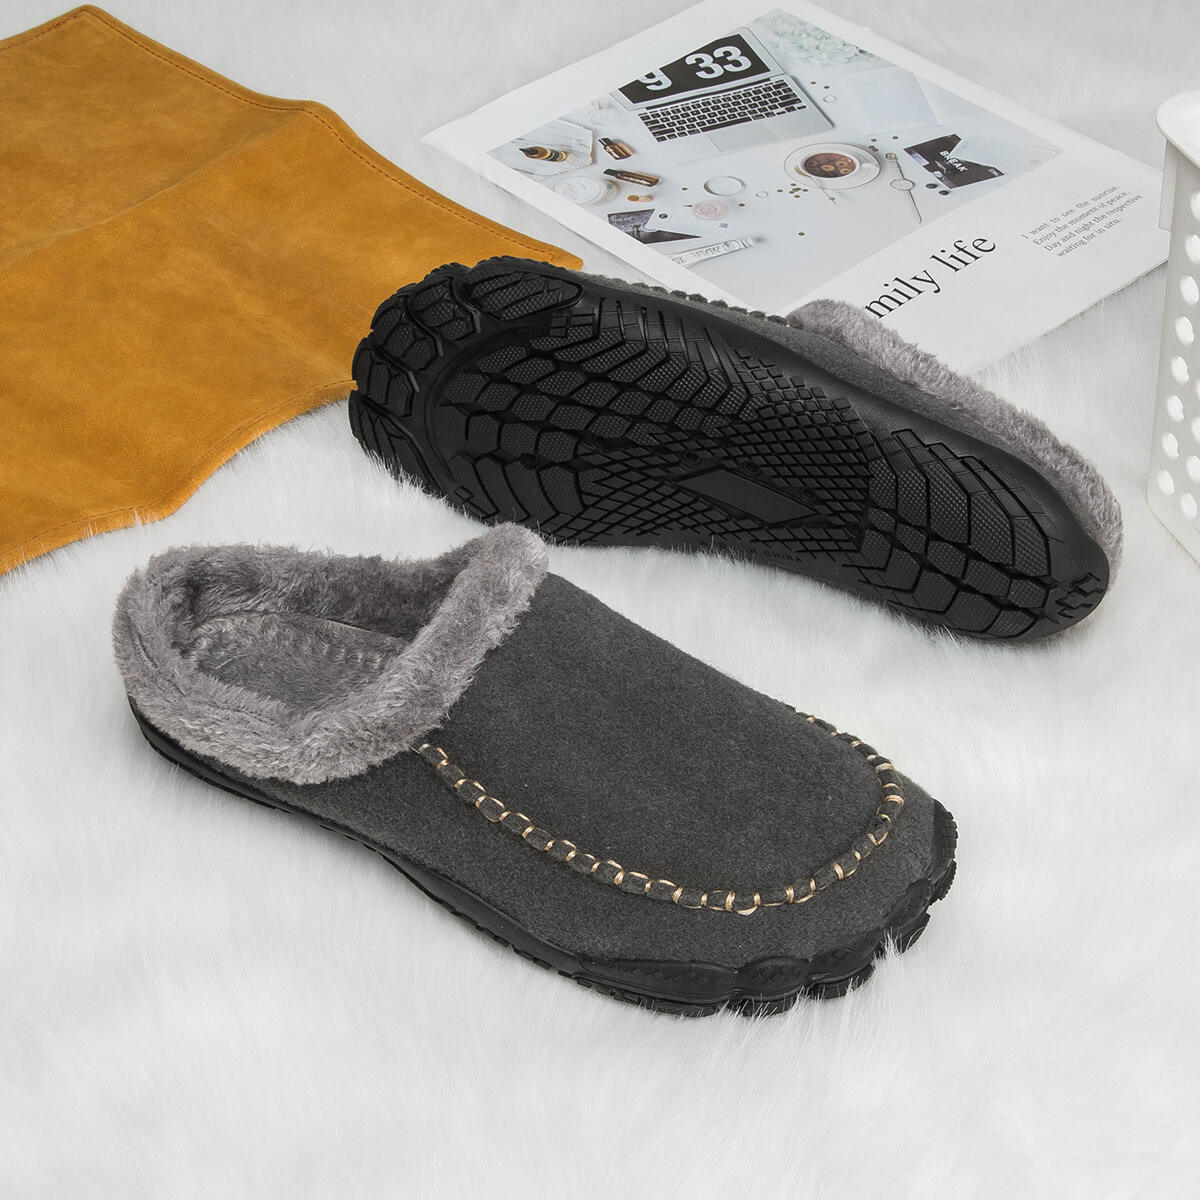 Men's Comfort Winter Warm Fleece Lined Casual Slippers Waterproof Indoor Outdoor Non-slip House Shoes